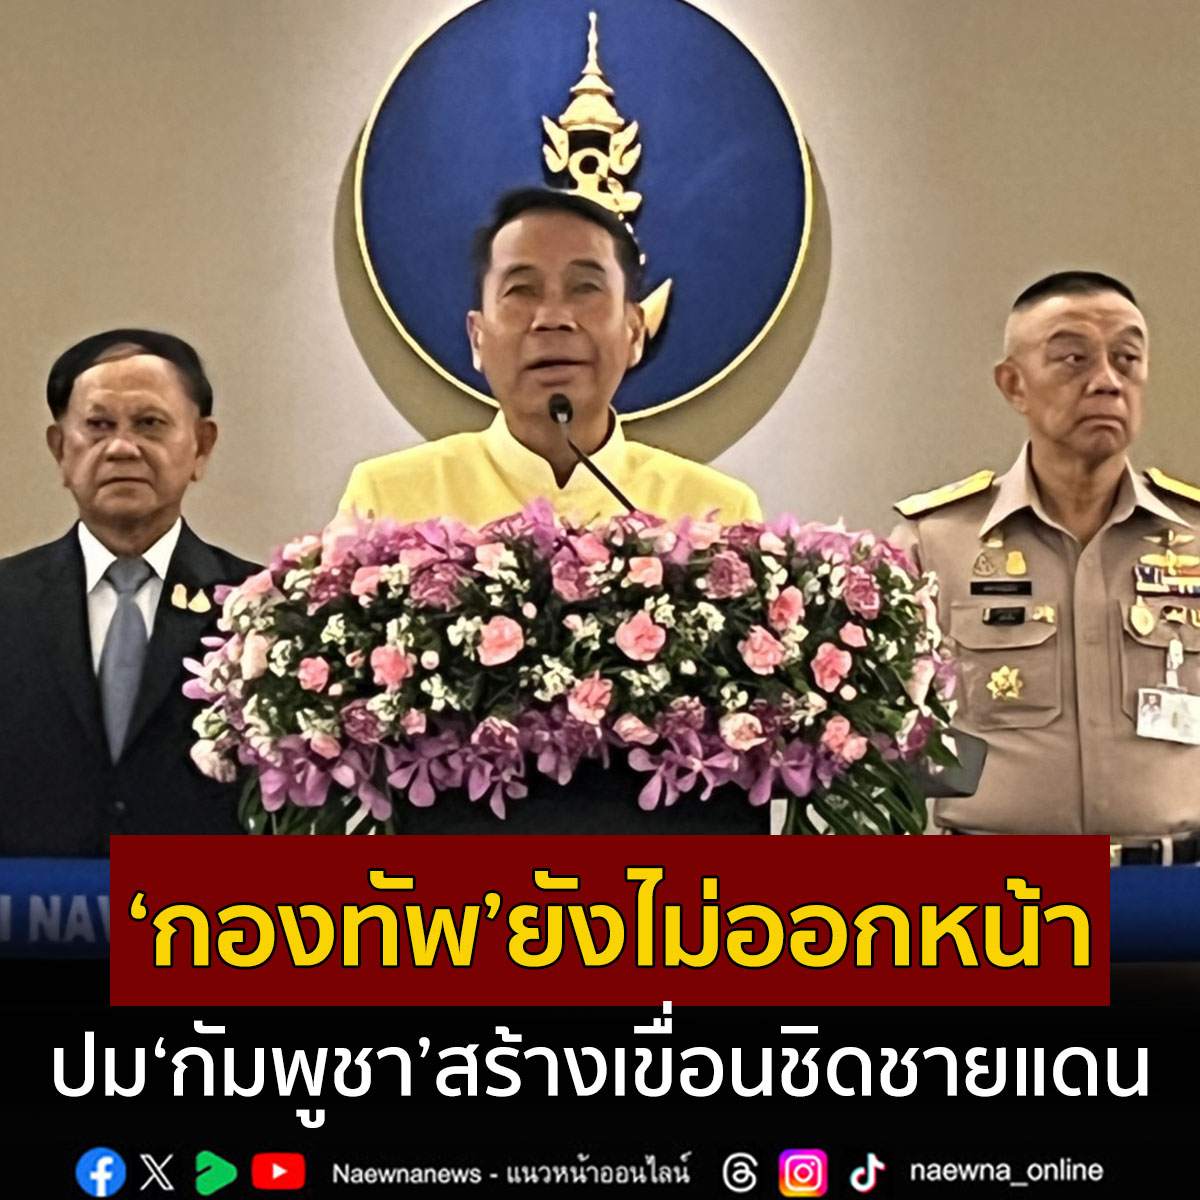 กองทัพยังไม่ออกหน้า!!! สุทินชี้กองทัพยังไม่ออกหน้า เคลียร์ปมกัมพูชาสร้างเขื่อนชิดชายแดนตราด ให้เป็นเรื่องกระทรวงการต่างประเทศเจรจา มองเป็นช่องทางเหมาะสม naewna.com/politic/805975 #กัมพูชา #กองทัพ #กลาโหม #สุทินคลังแสง #เขื่อน #ชายแดน